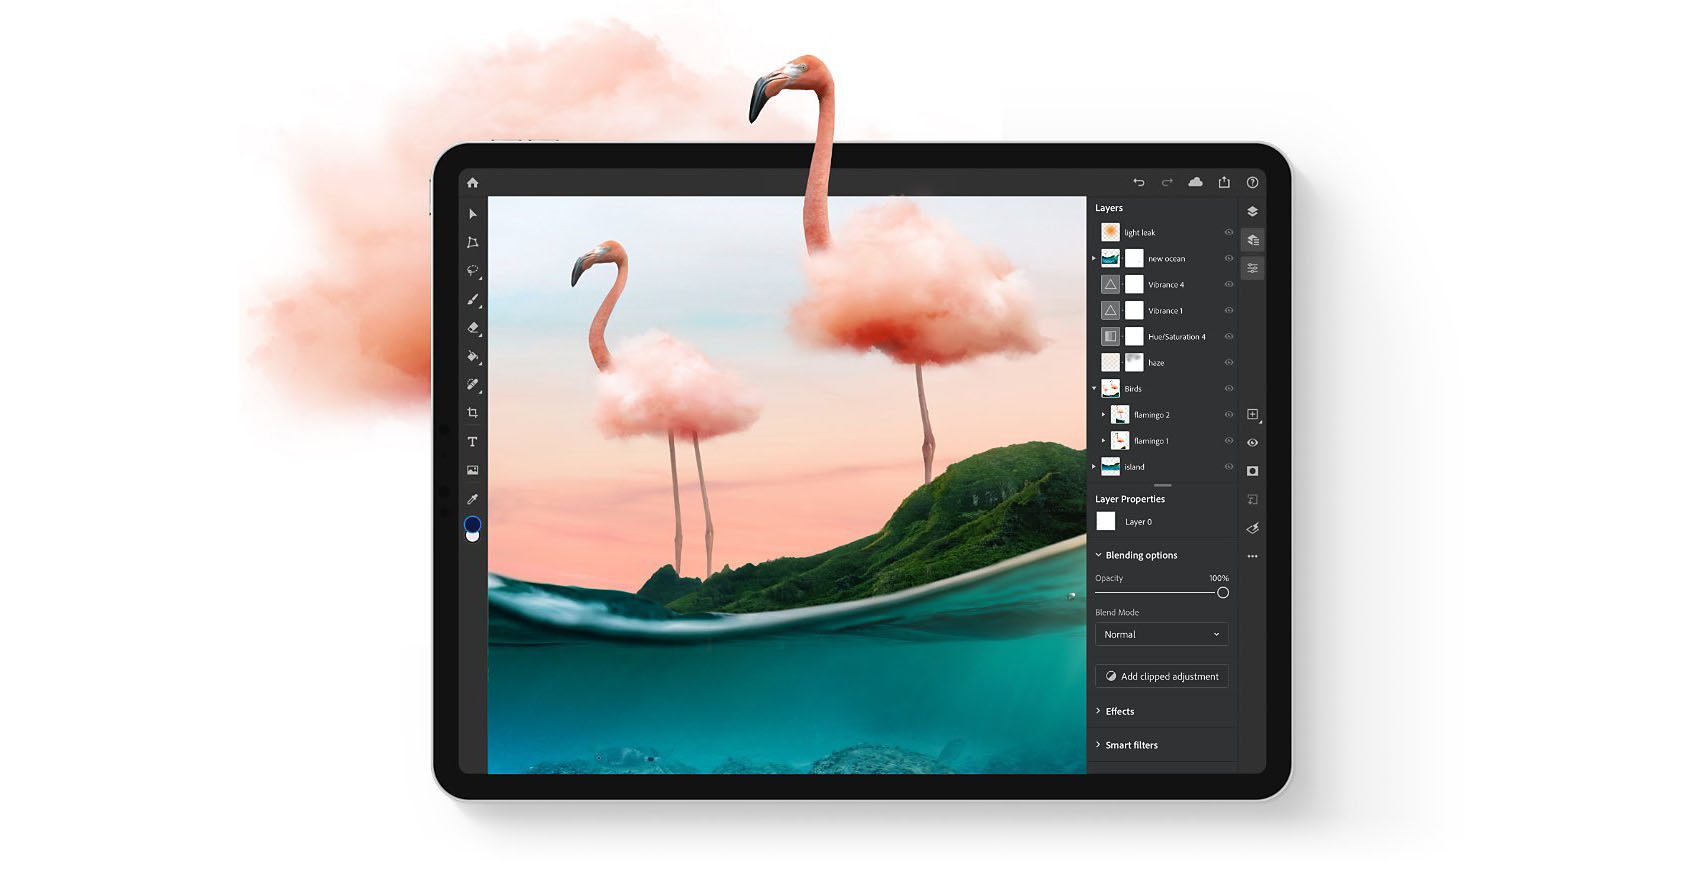 برنامج 18 أغسطس 2021 0 تعليقات Photoshop: يضيف Adobe ميزة لم يتم تفويتها منذ فترة طويلة لجهاز iPad